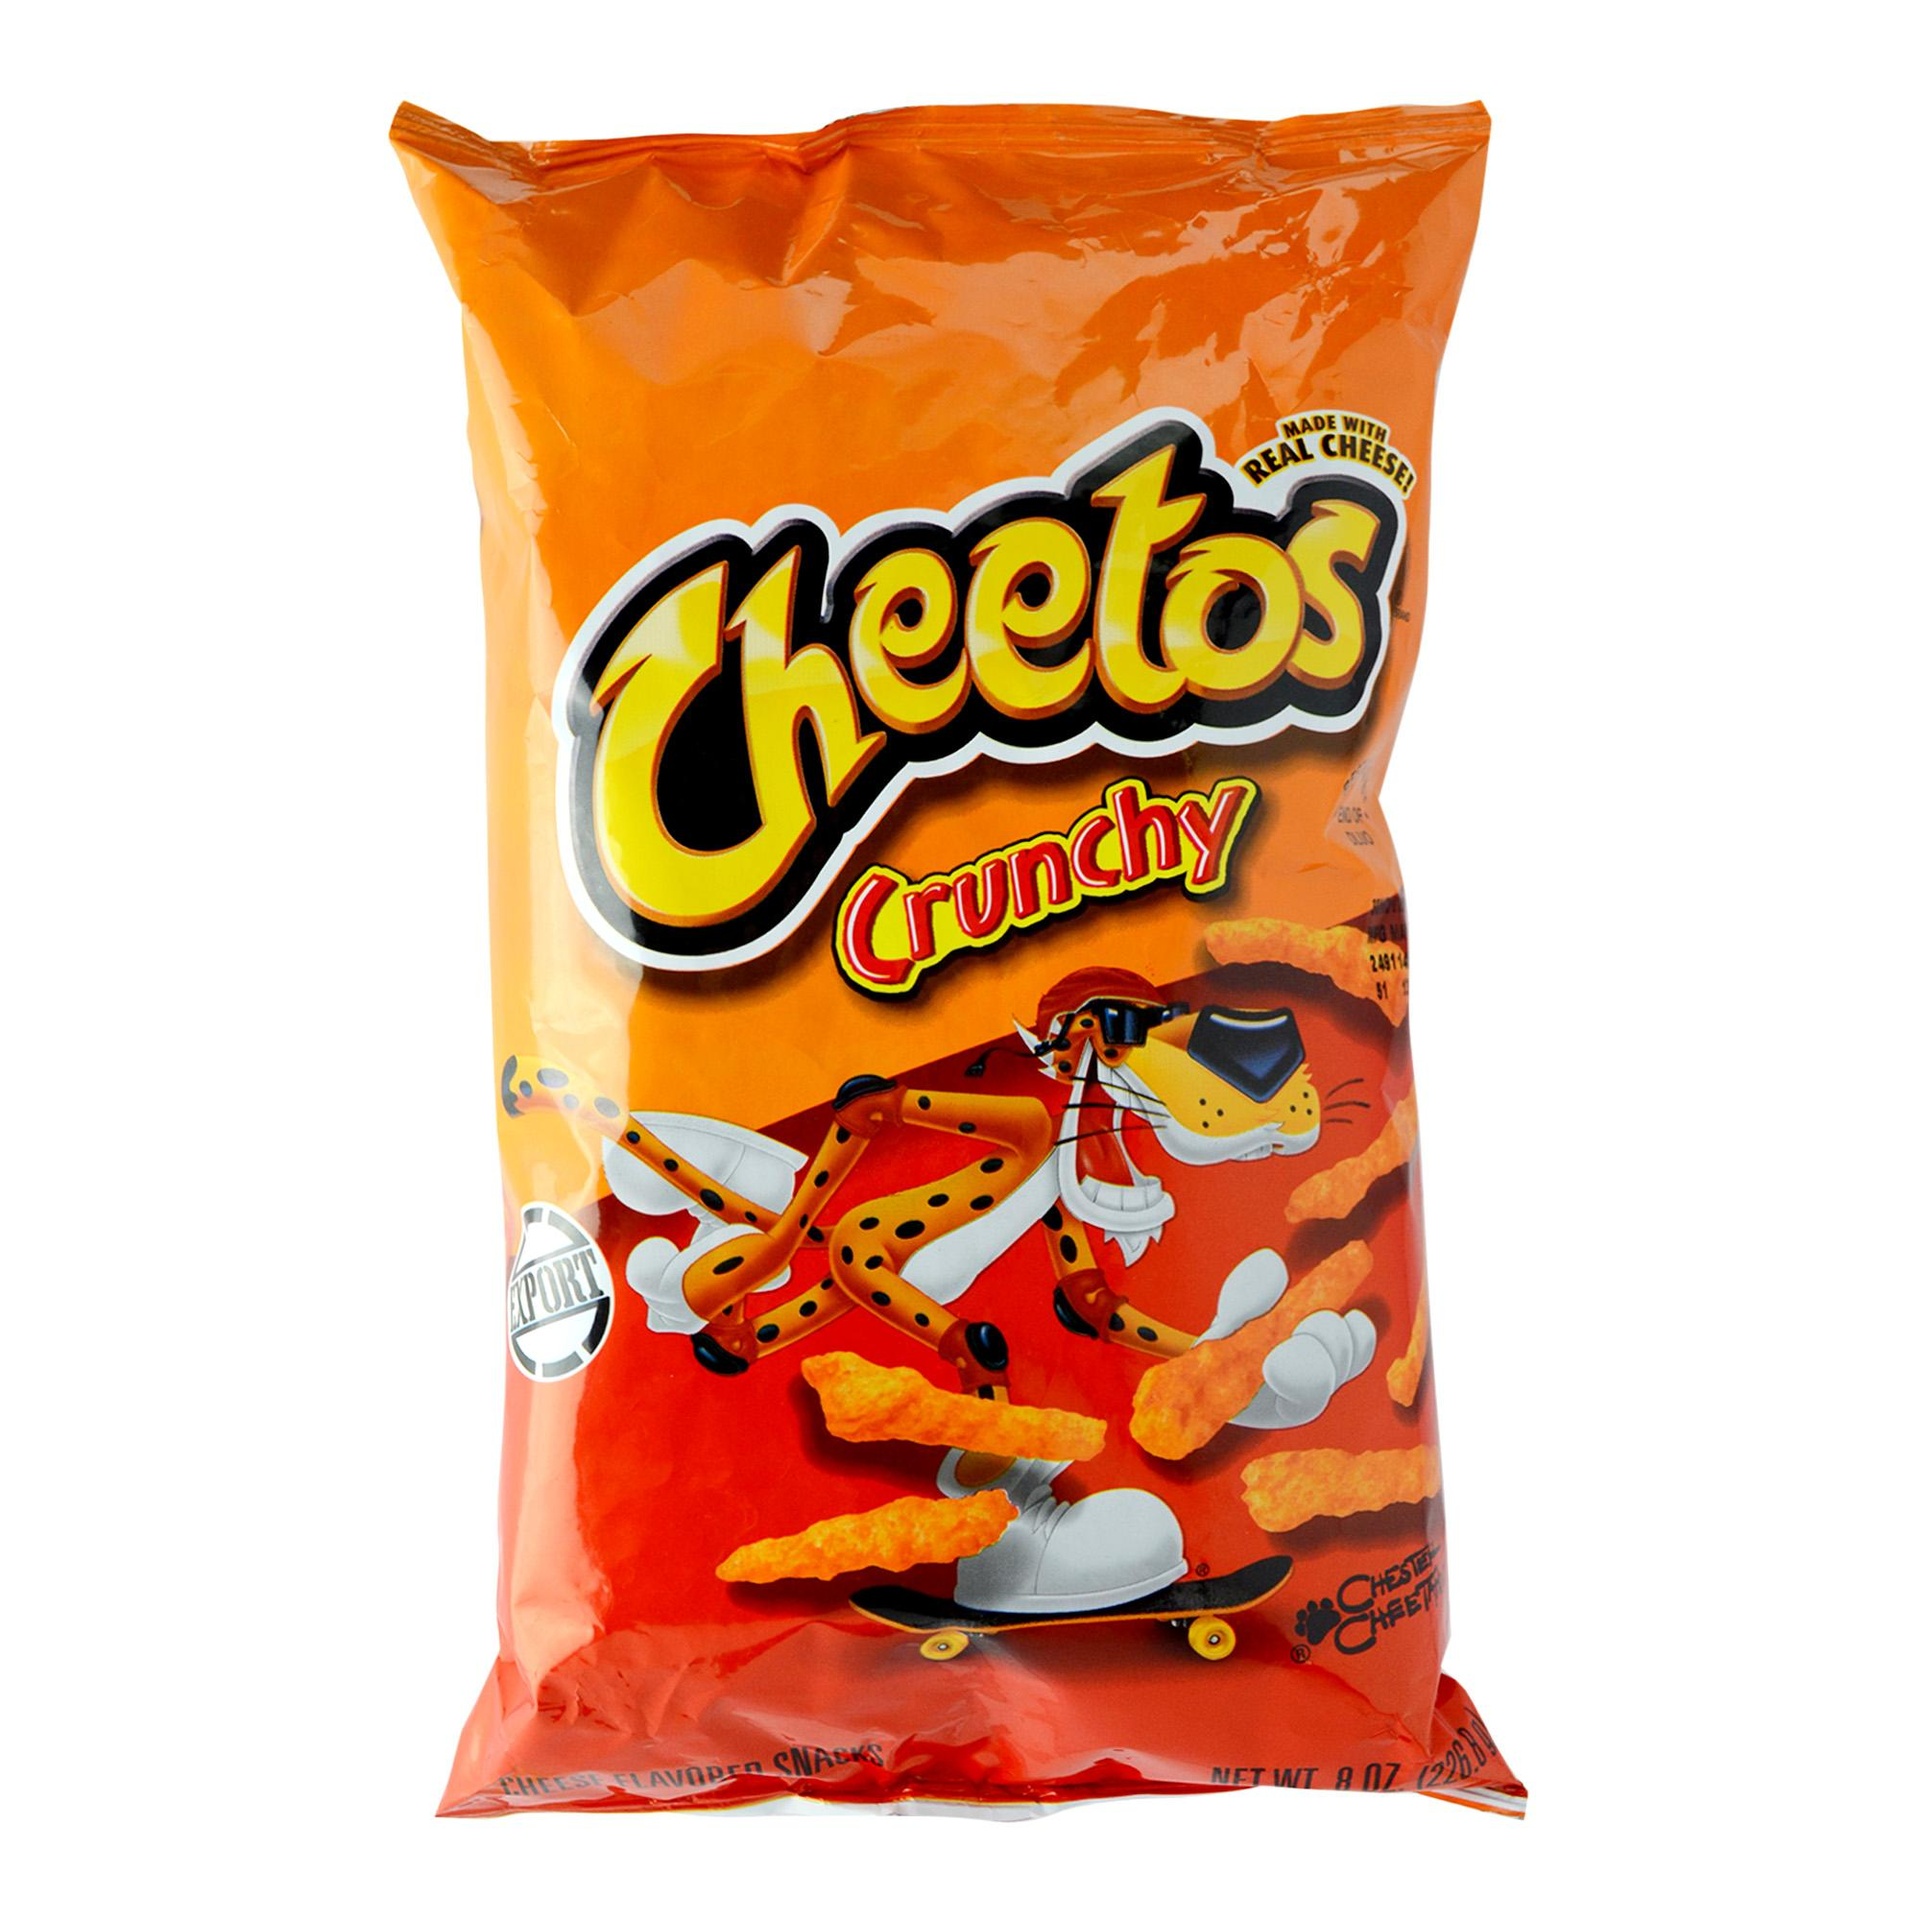 Cheetos Corn Crunchy 8oz